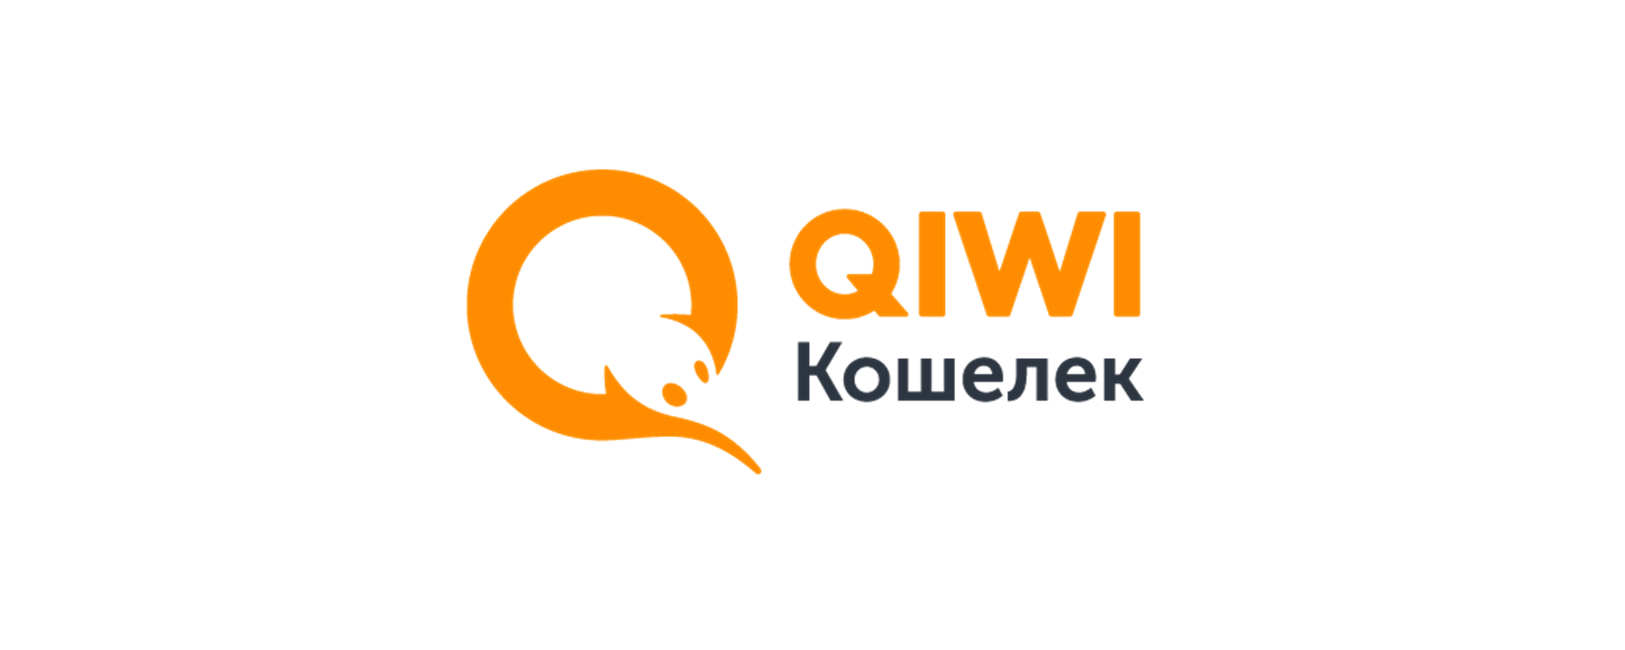 Киви банк гарантия. QIWI кошелек. Картинки QIWI кошелек. Логотип киви кошелек. Электронная платежная система QIWI.